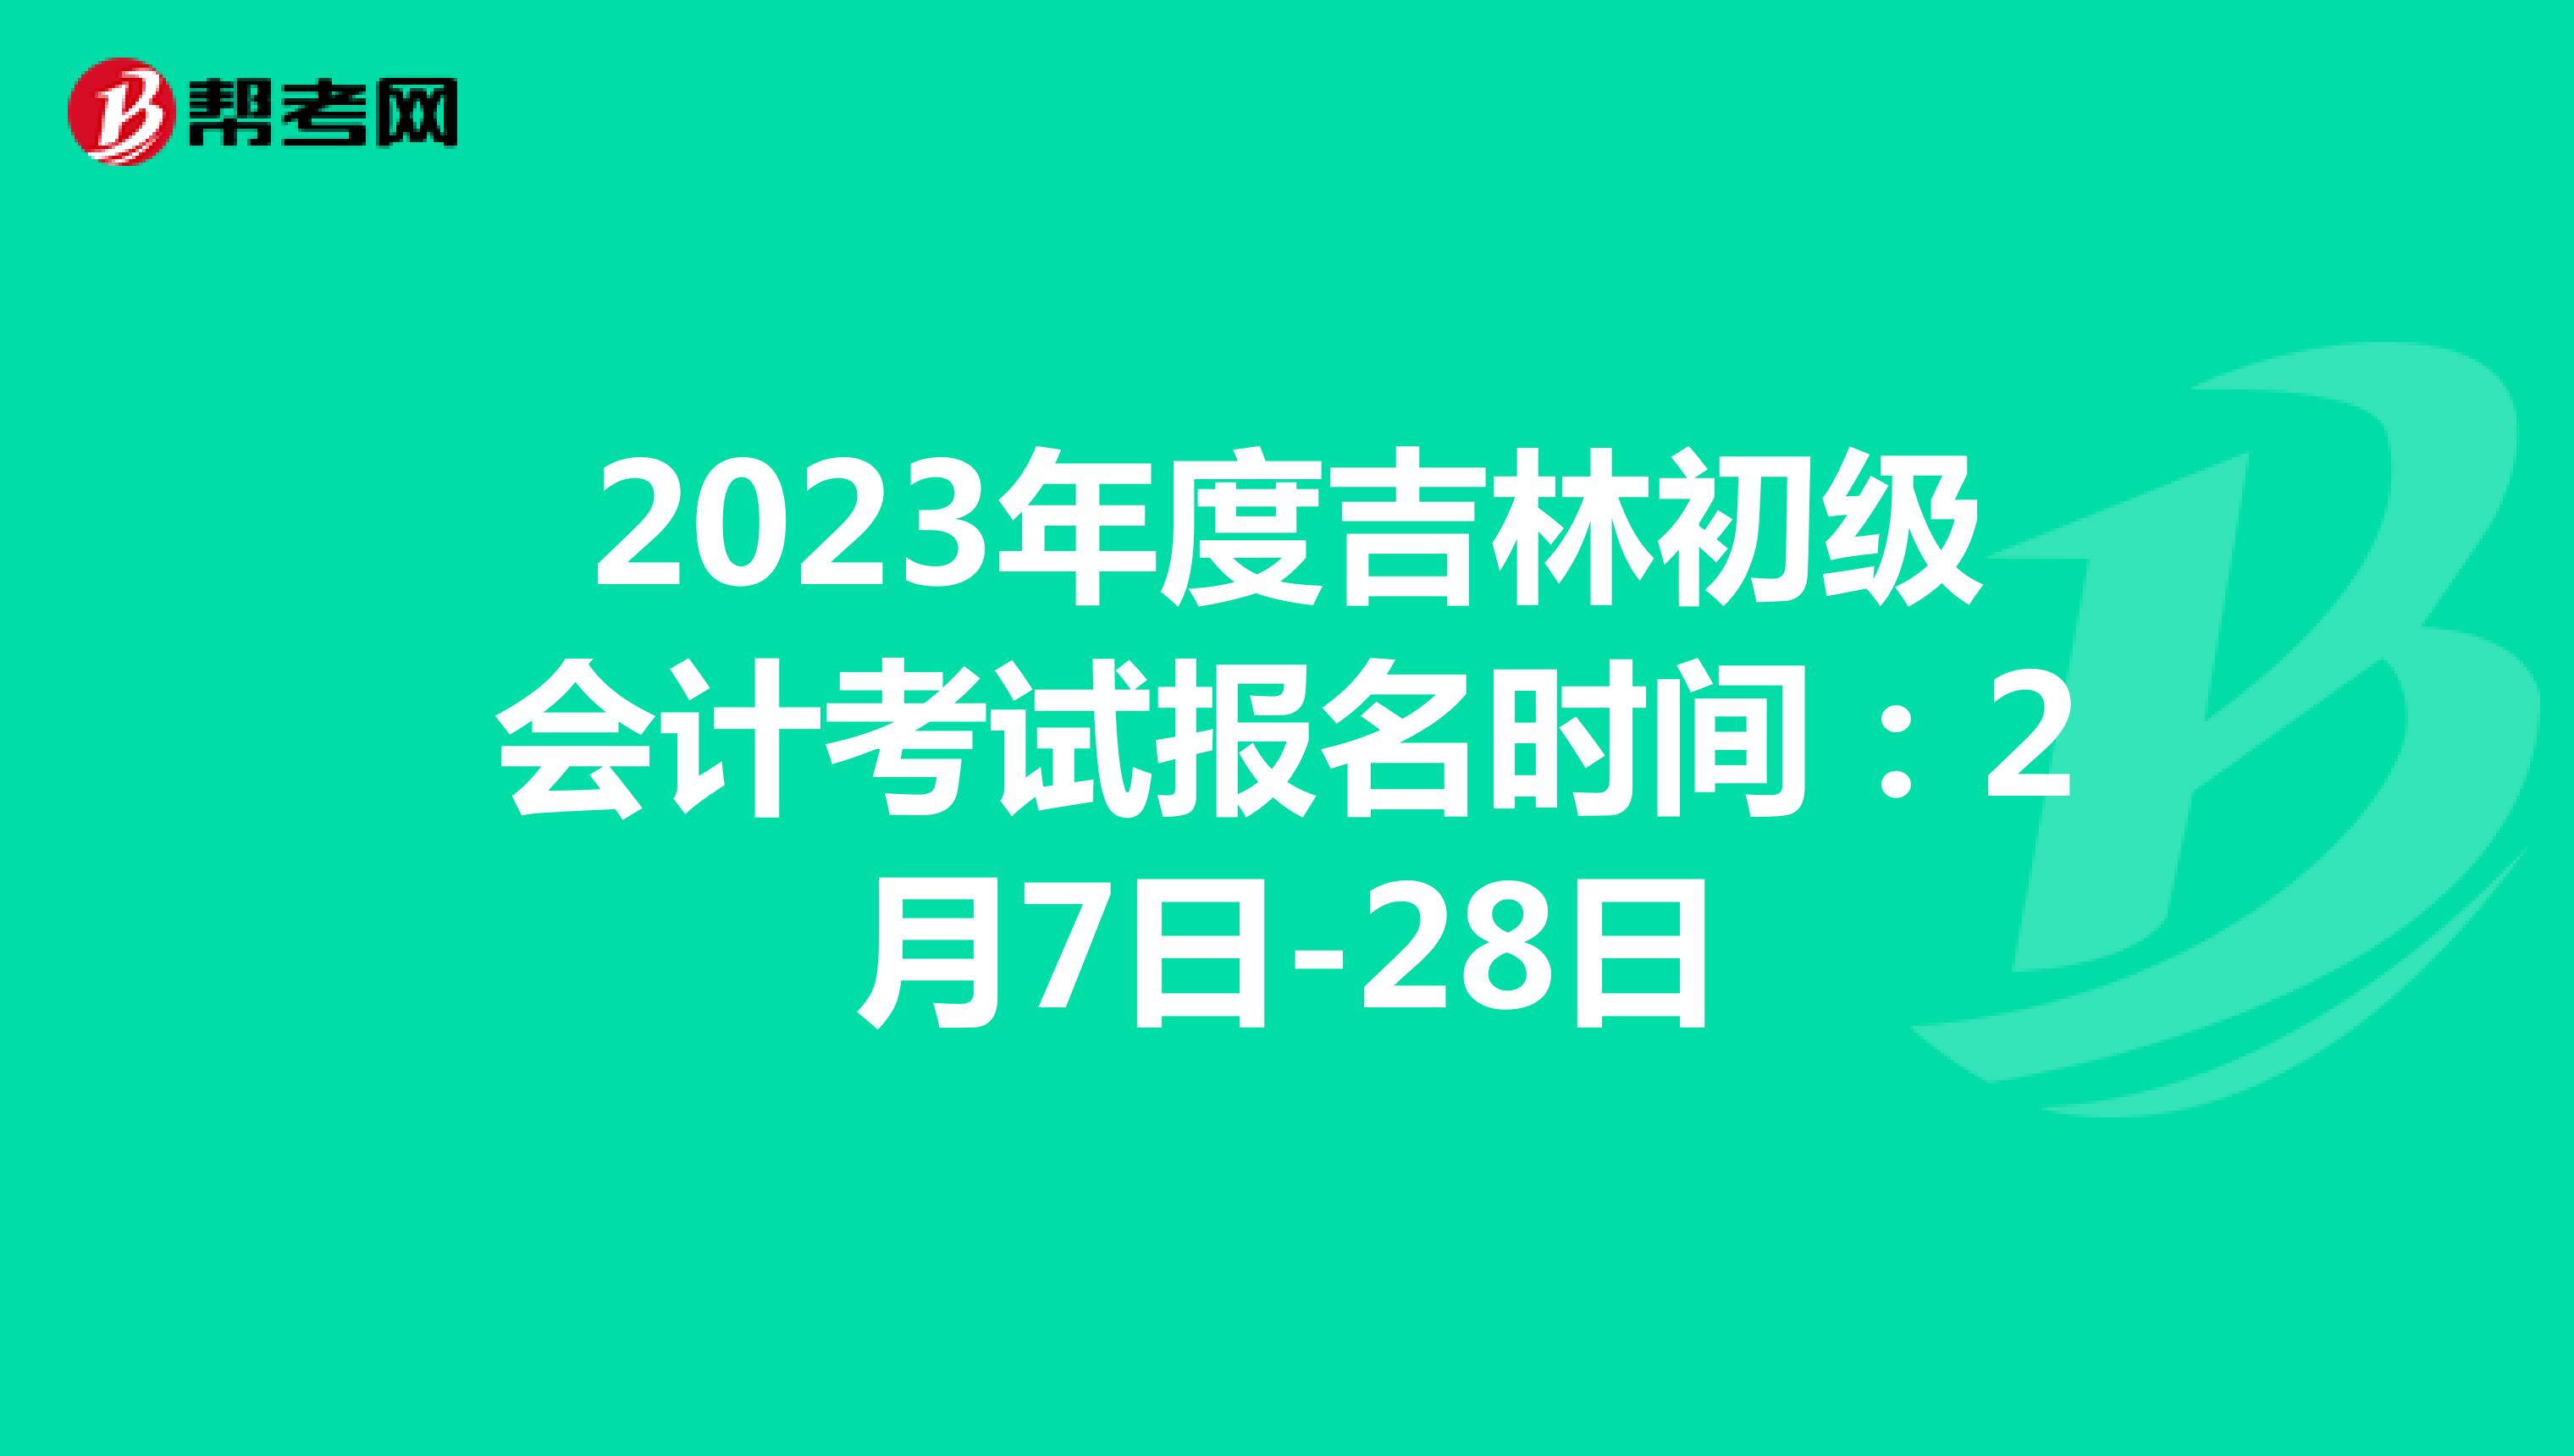 2023年度吉林初级会计考试报名时间：2月7日-28日